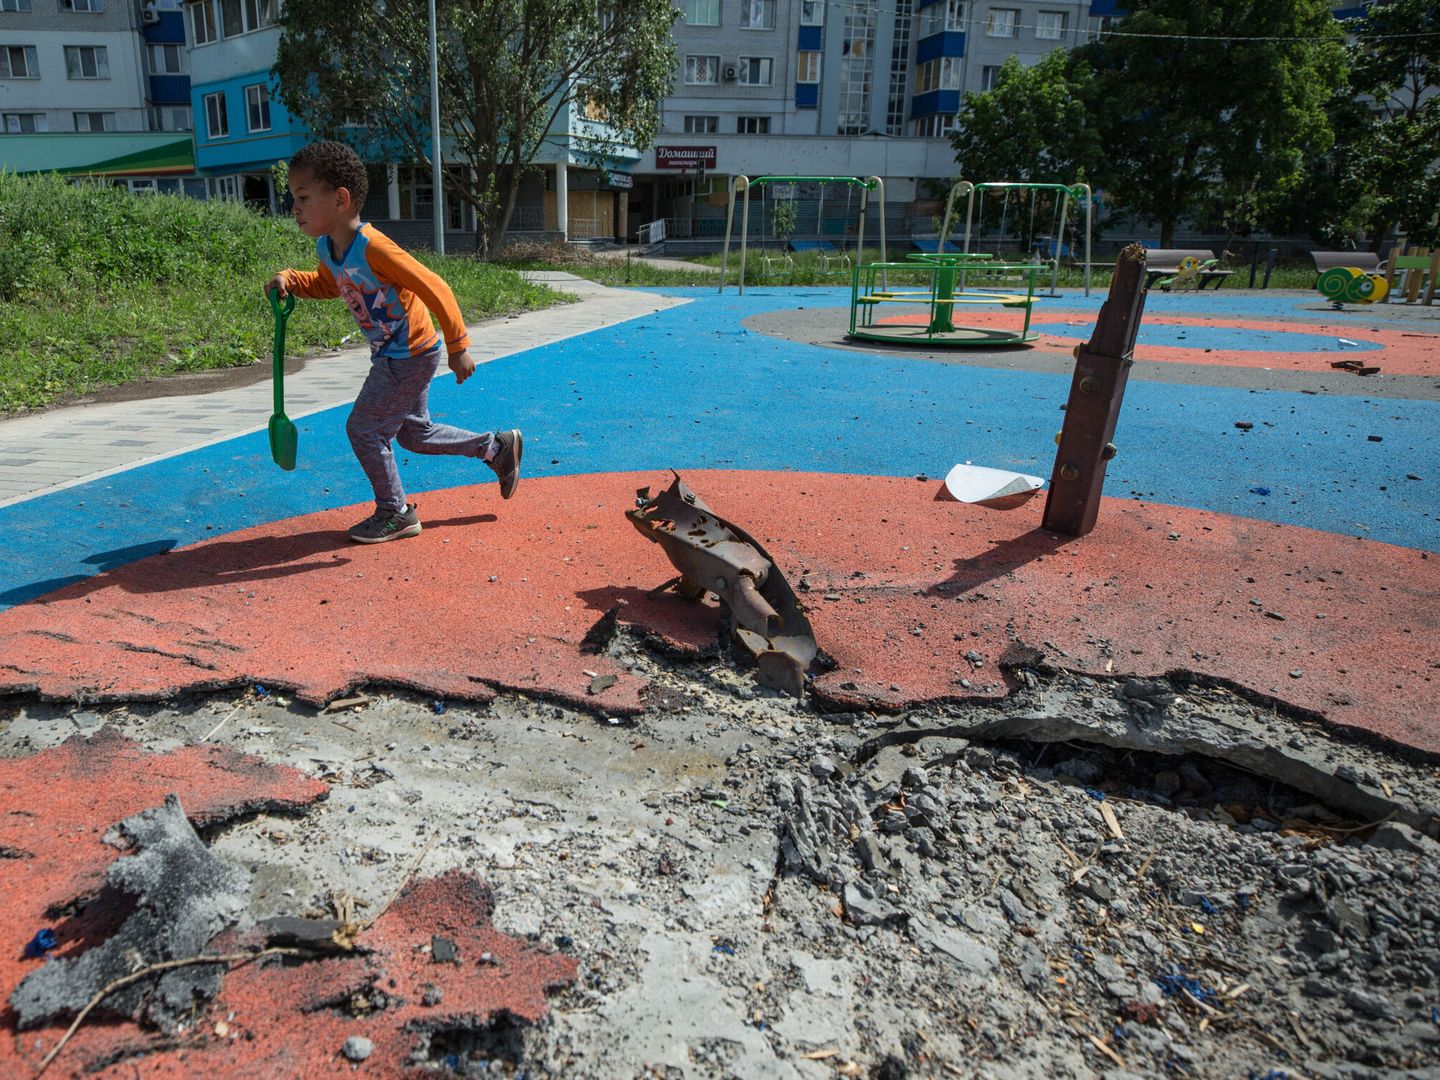 Un niño ucraniano de 4 años juega en un parque infantil parcialmente destruido por los bombardeos rusos en Járkov, Ucrania. (EFE/Esteban Biba)